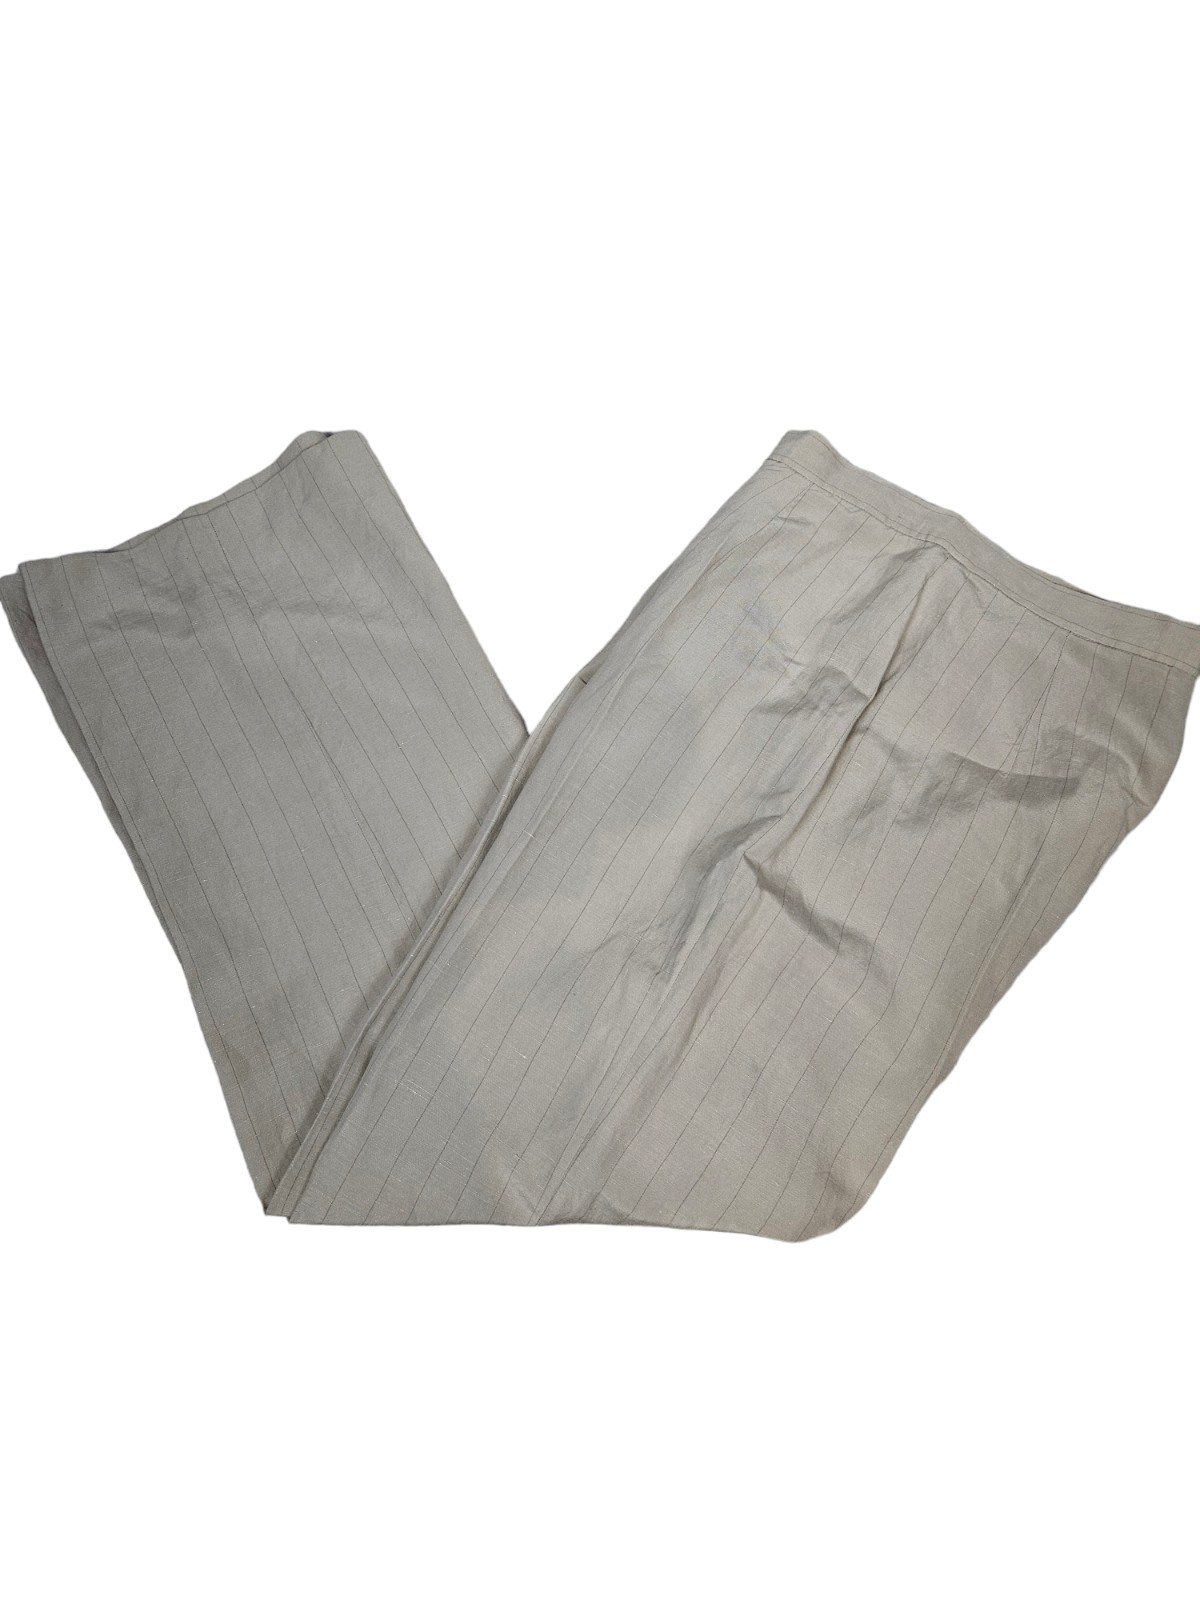 Vintage Lauren Ralph Lauren Silk & Linen High Waist Mom Dress Pants Size 10 S28 6wrpx3cwe